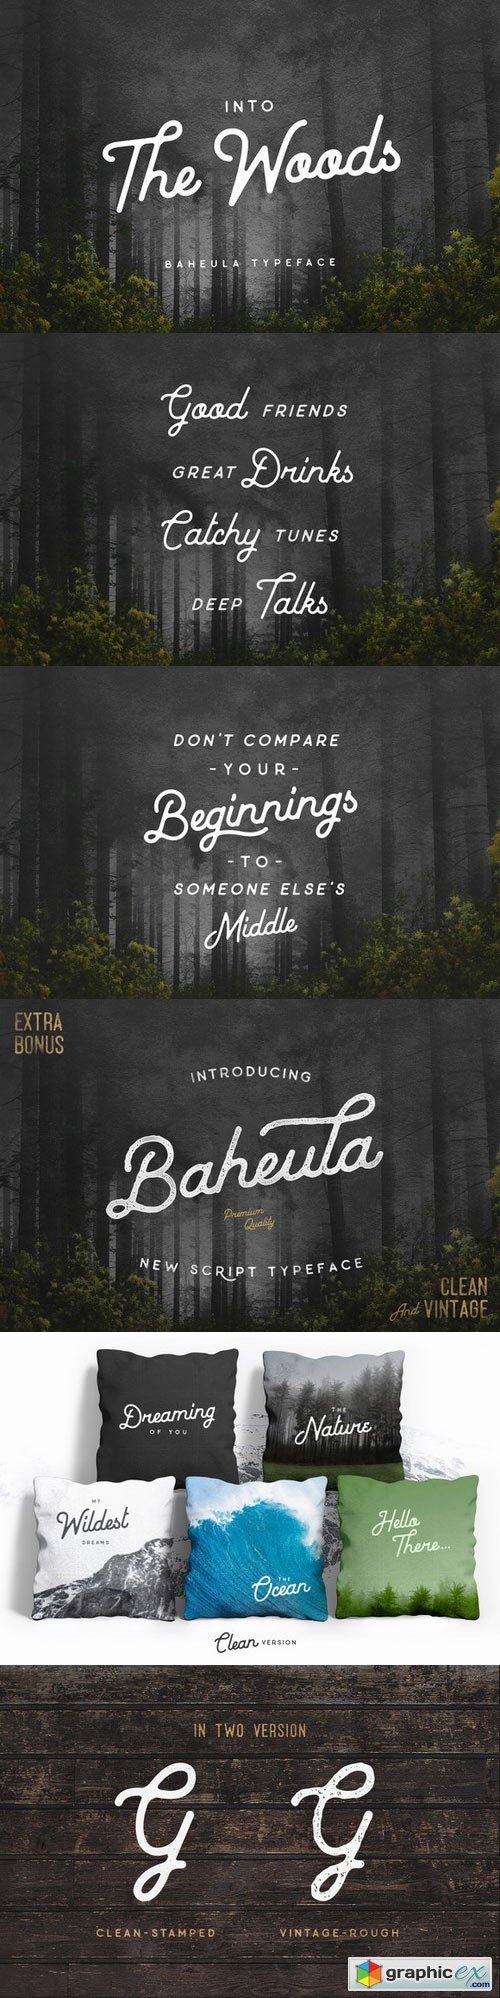 Baheula Vintage + Clean Typeface